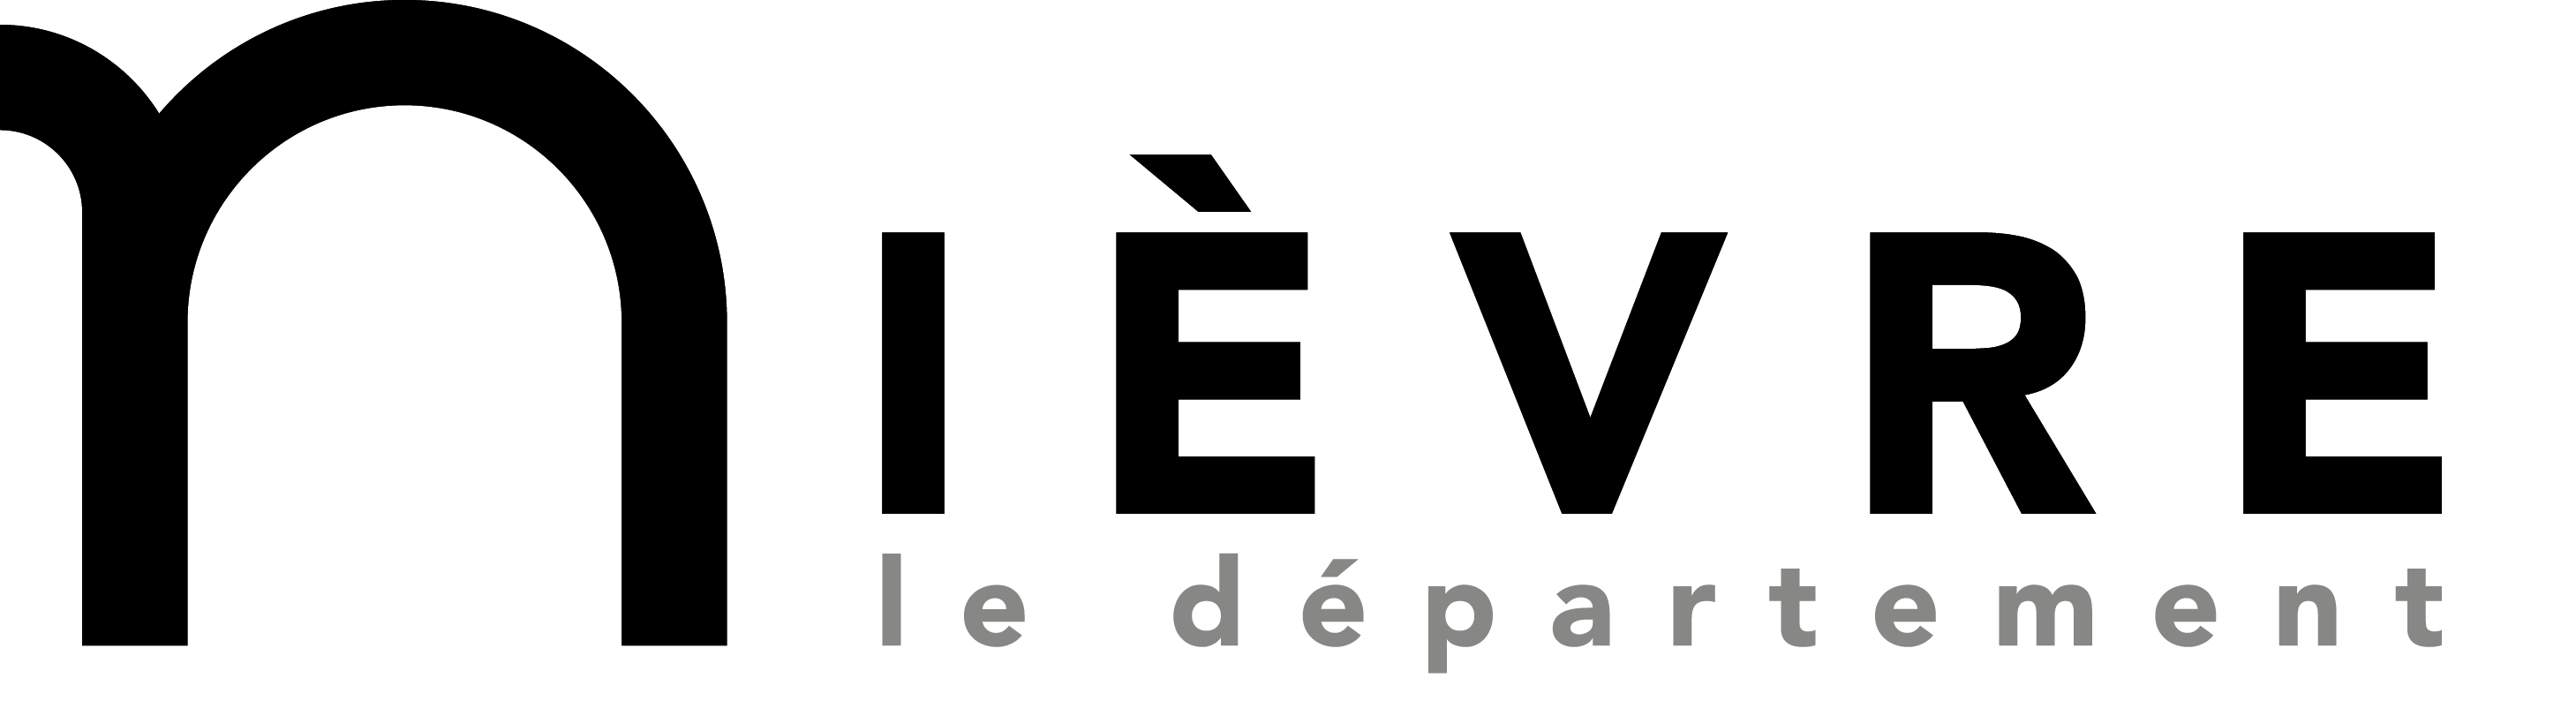 logo CD